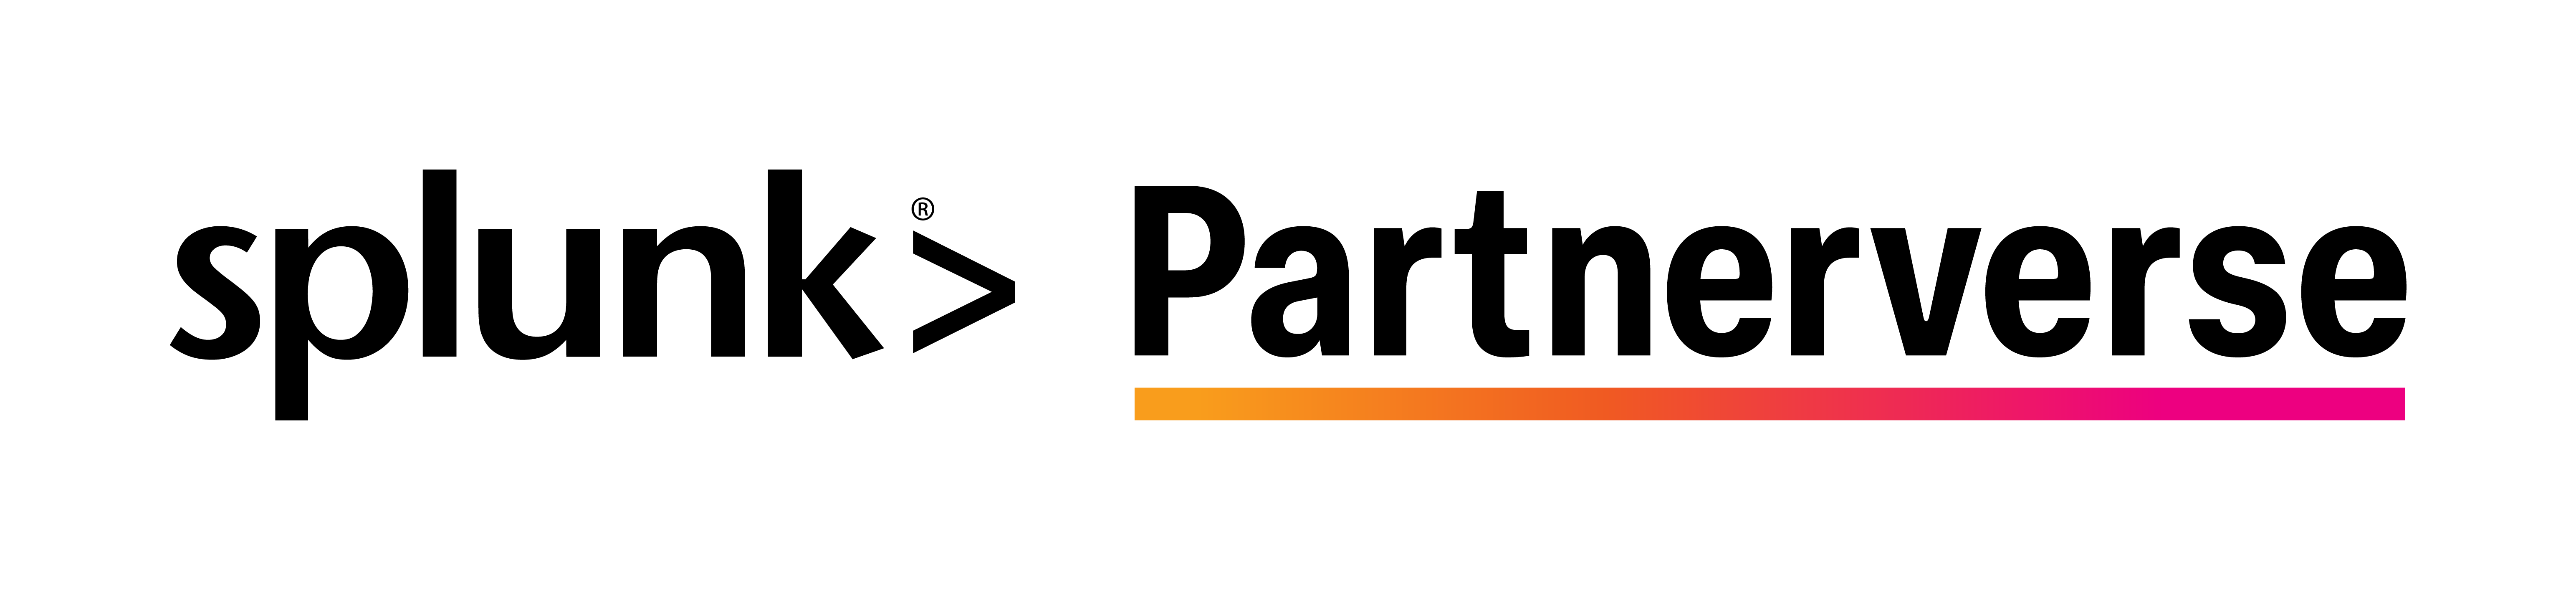 splunk-partnerverse-logo-horz-cl-rgb